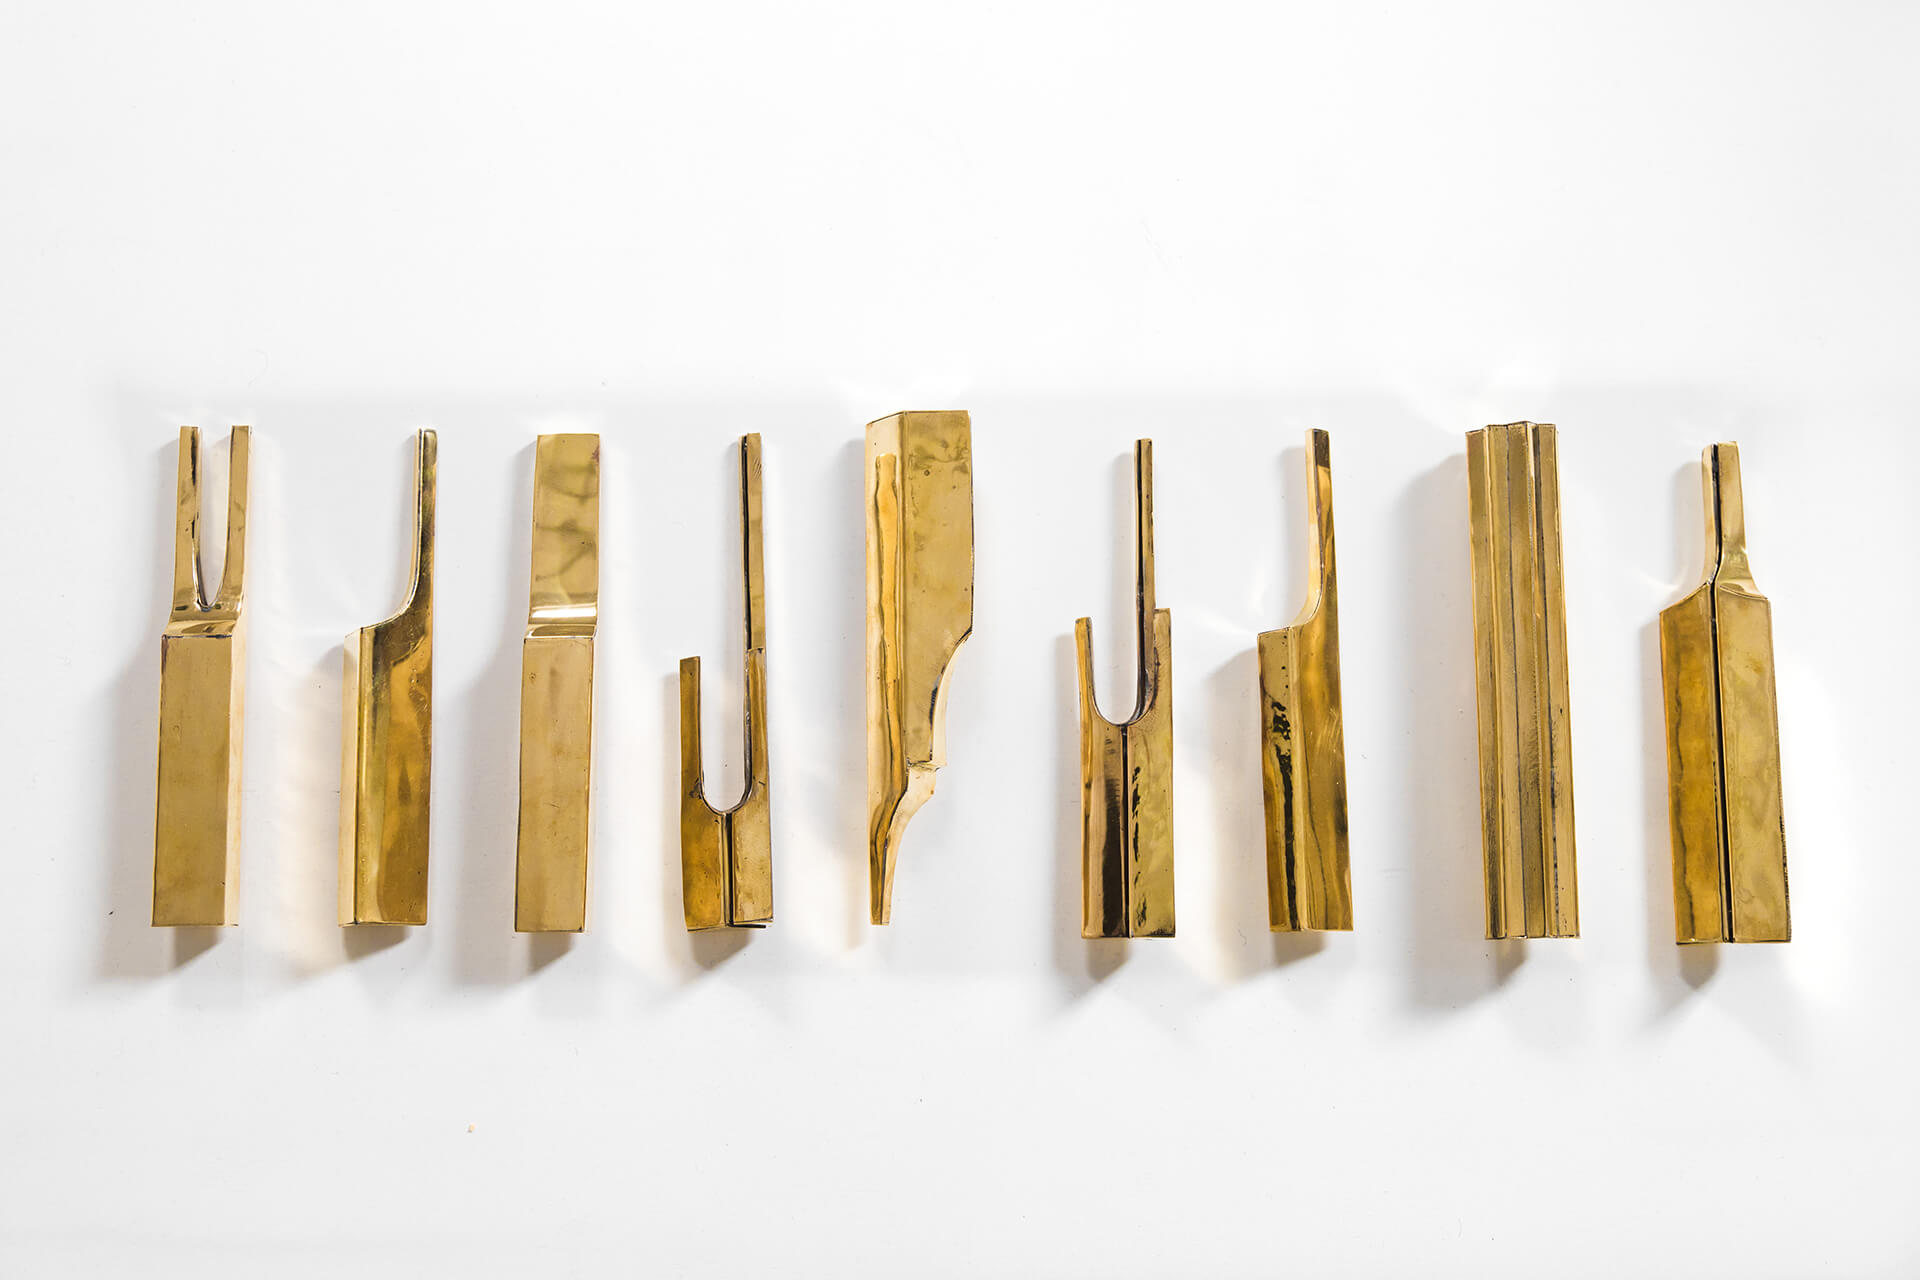 M'Barek Bouhchichi, "Re-enactement III", installation, éléments en cuivre, détail, 2020